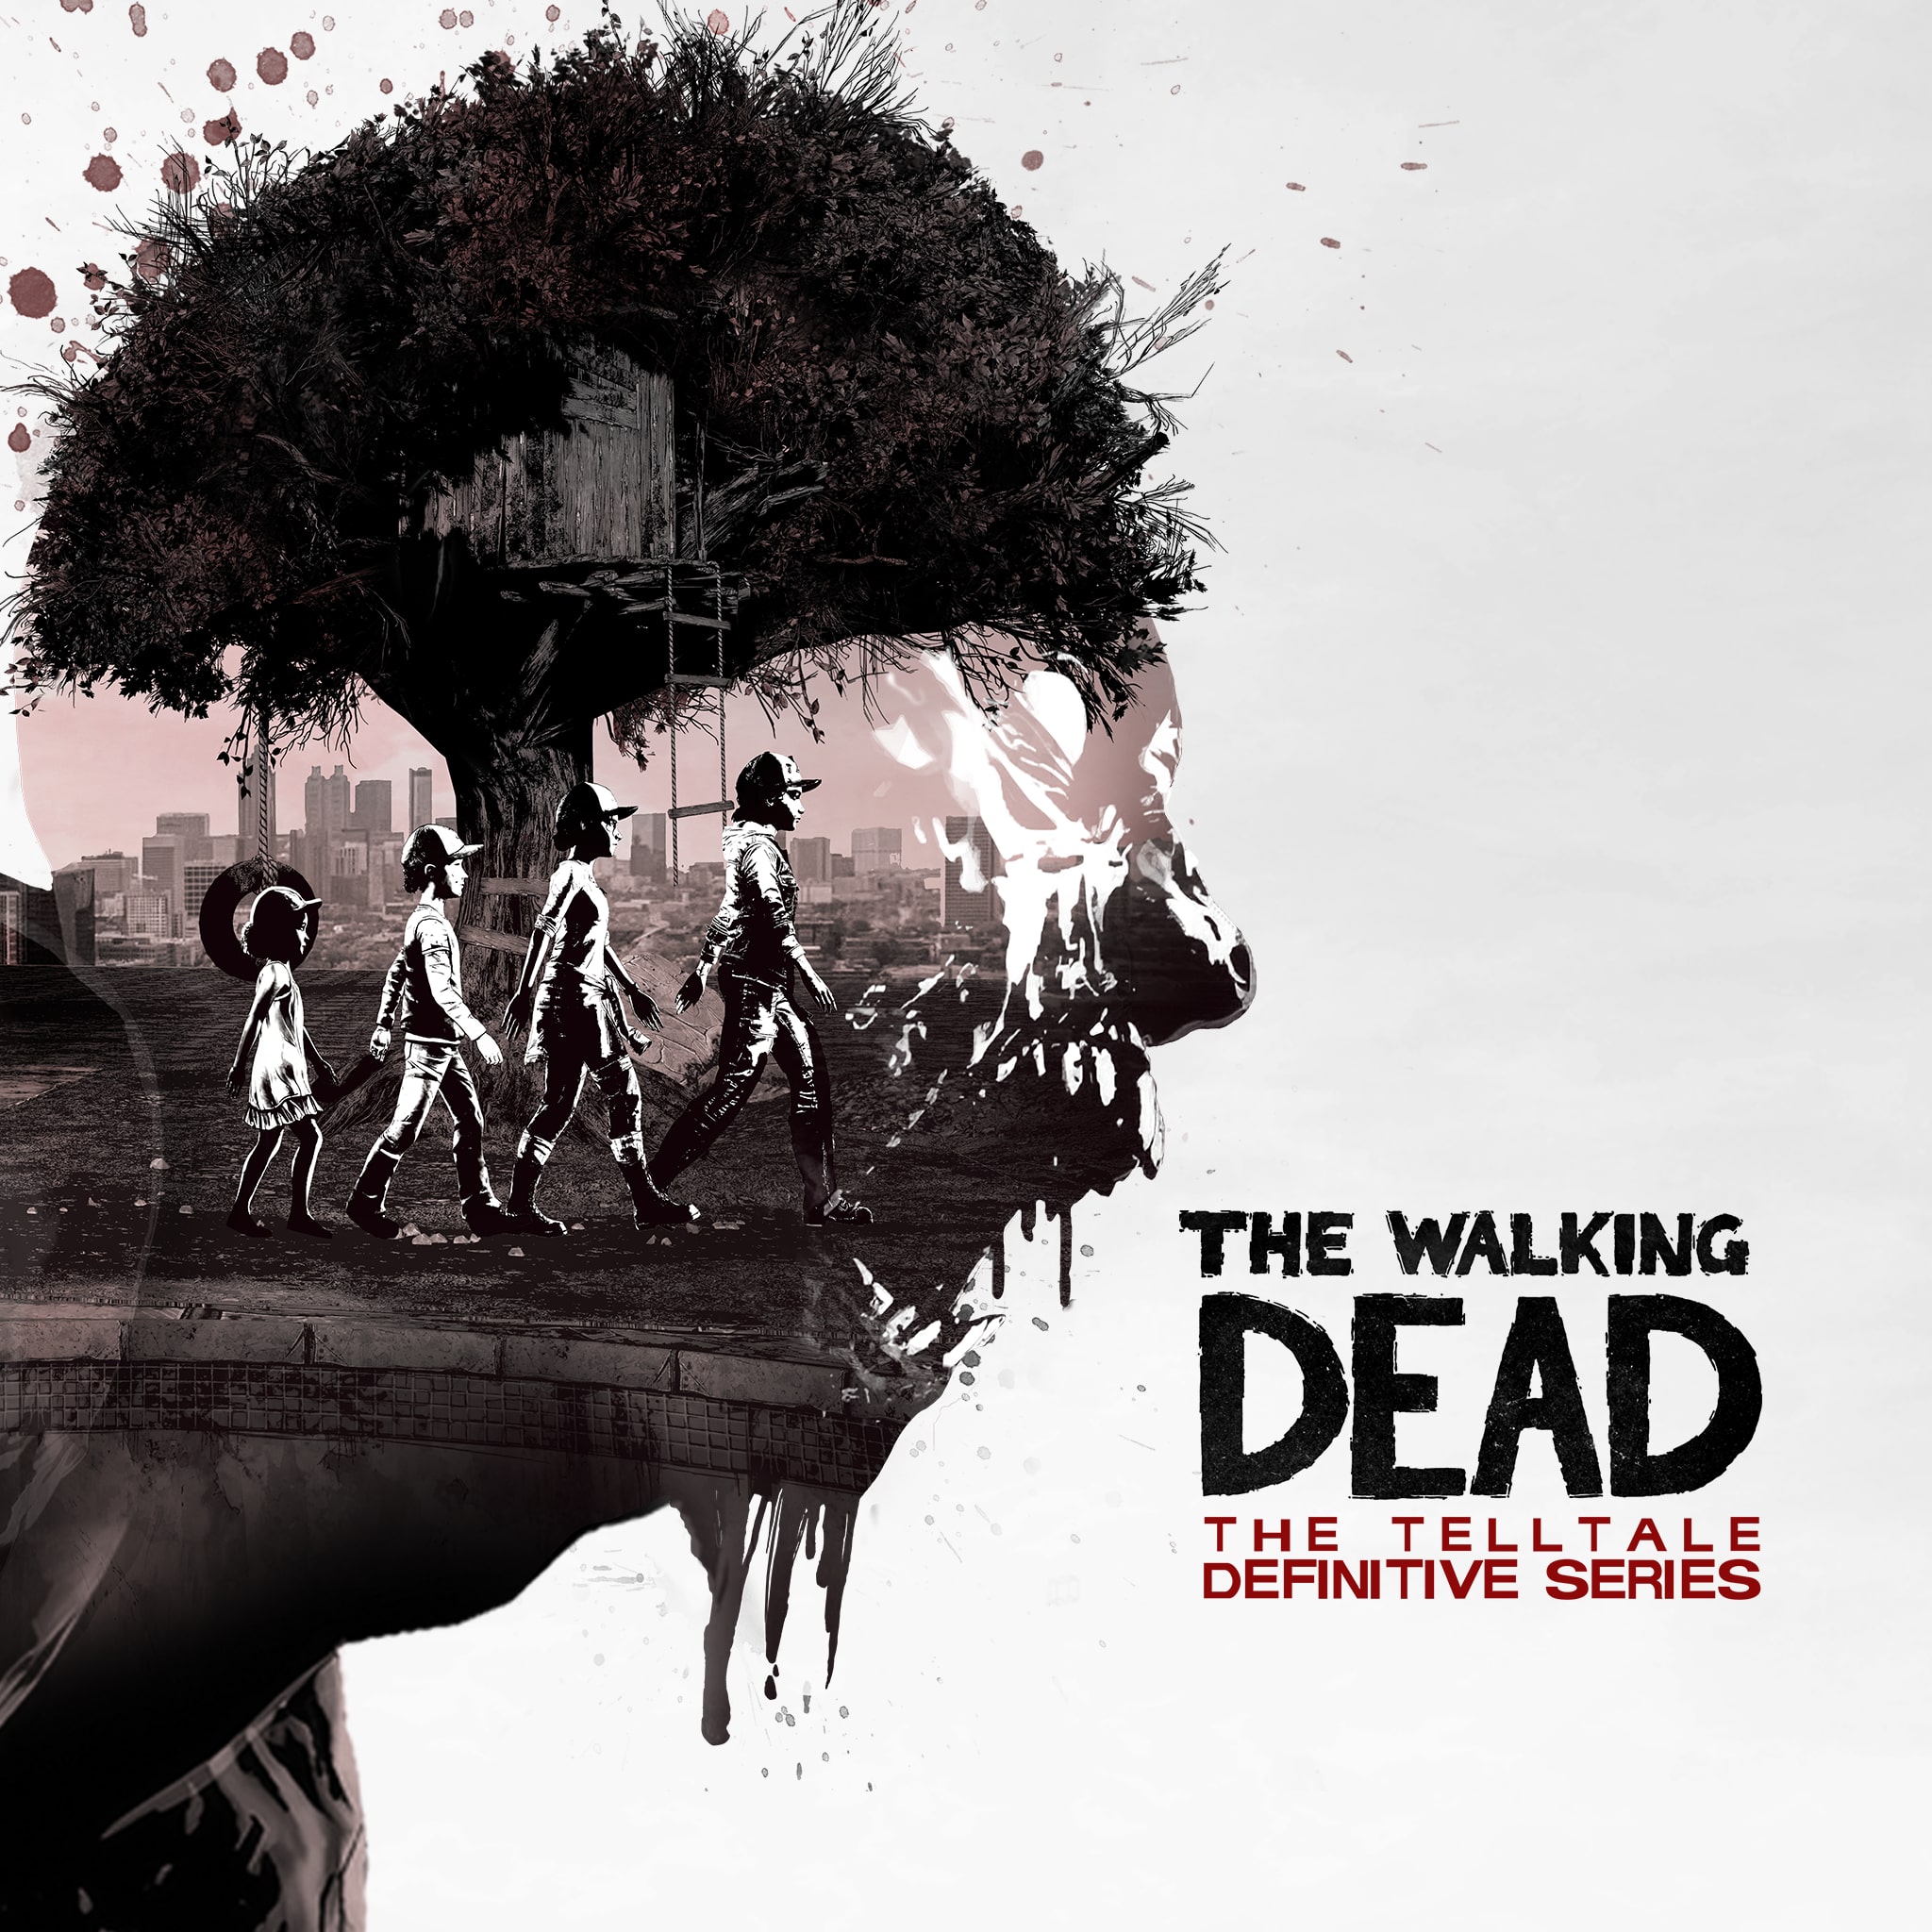 jaquette du jeu vidéo The Walking Dead: The Telltale Definitive Series